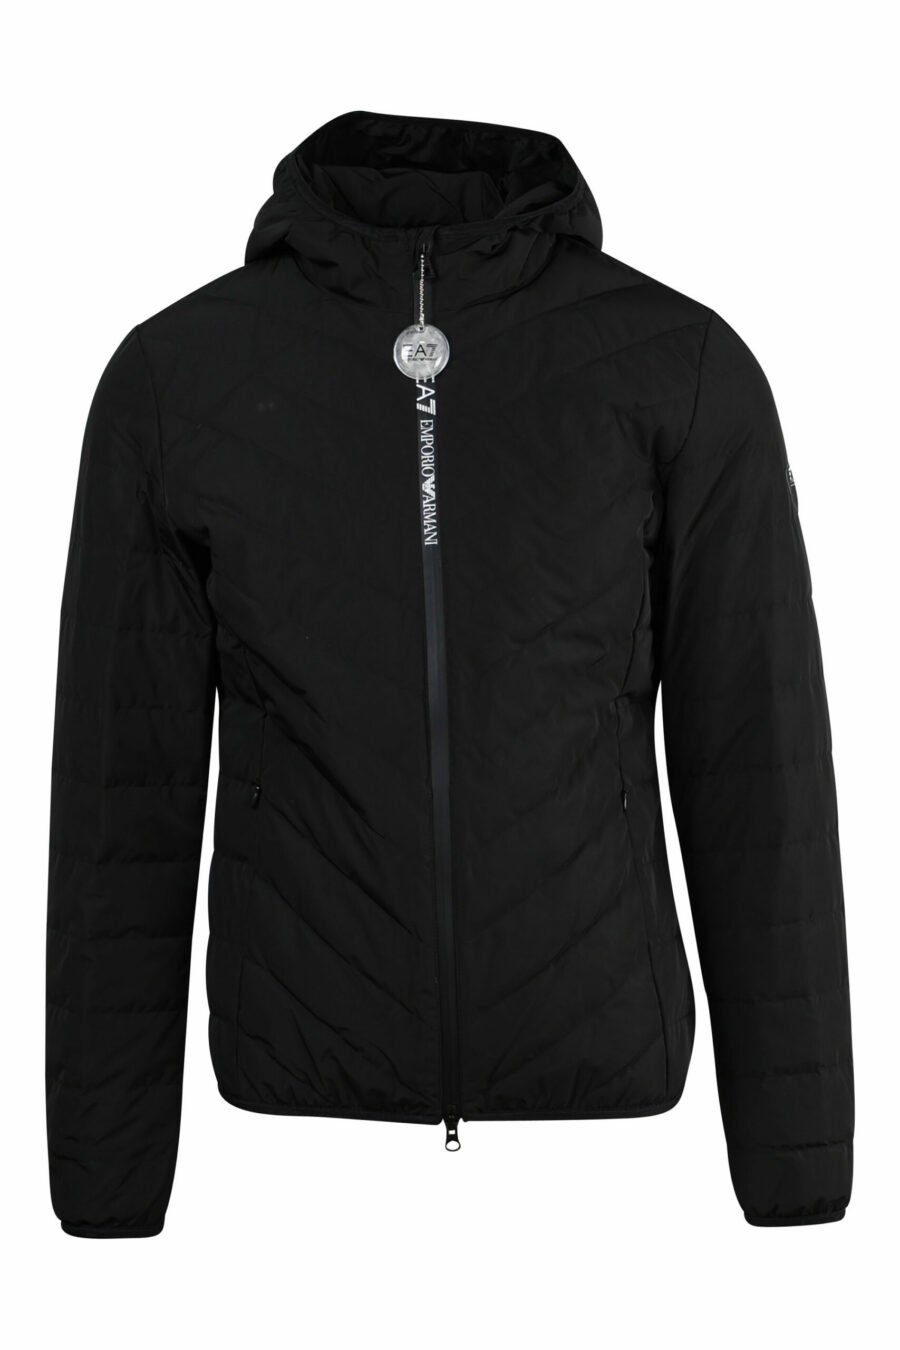 Veste coupe-vent noire avec capuche et logo vertical "lux identity" - 8057767519568 scaled